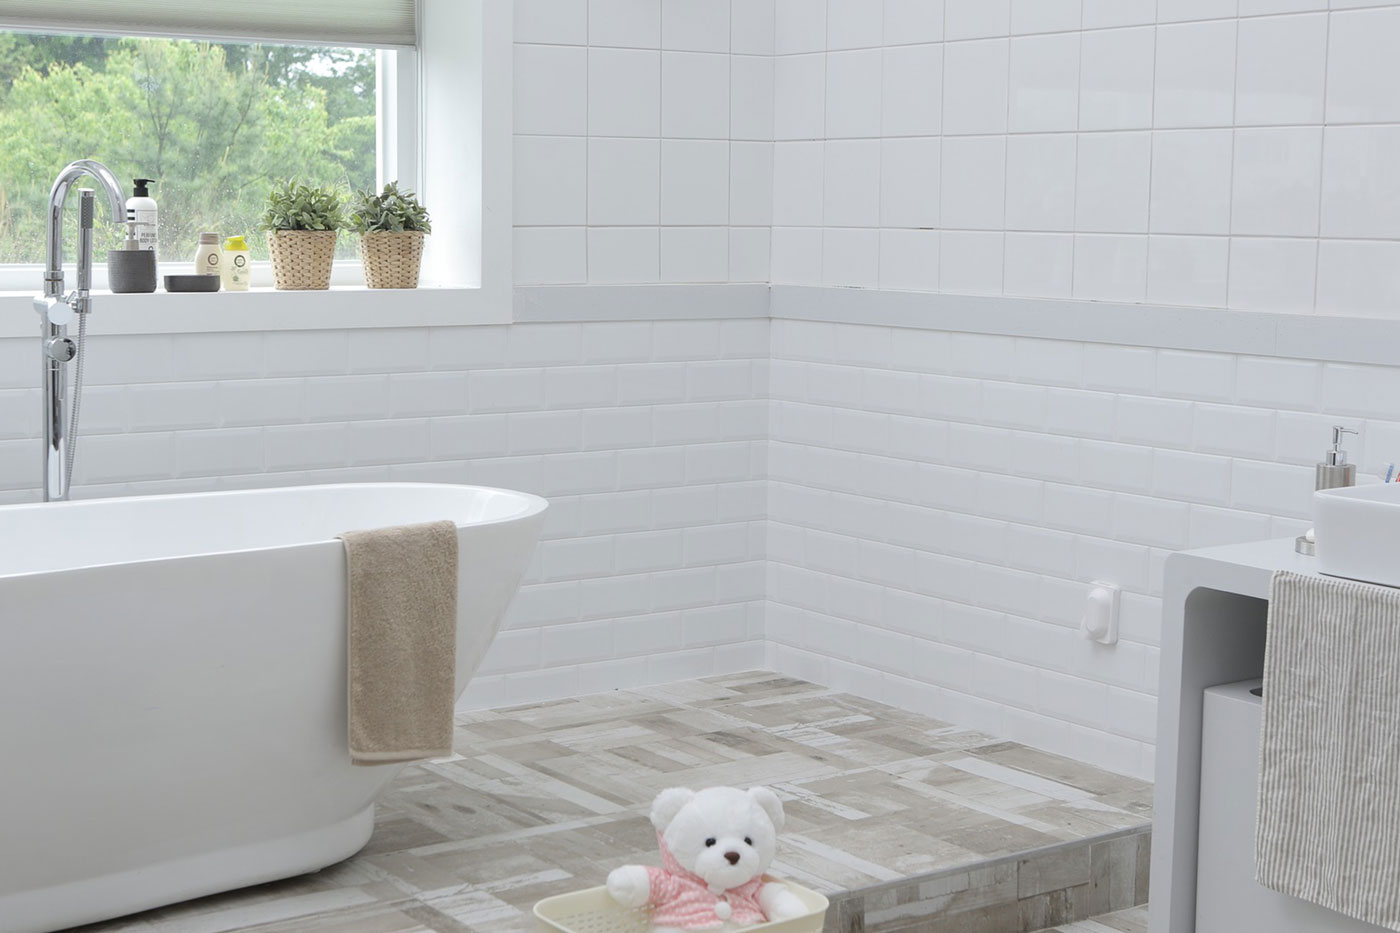 A tiled modern bathroom